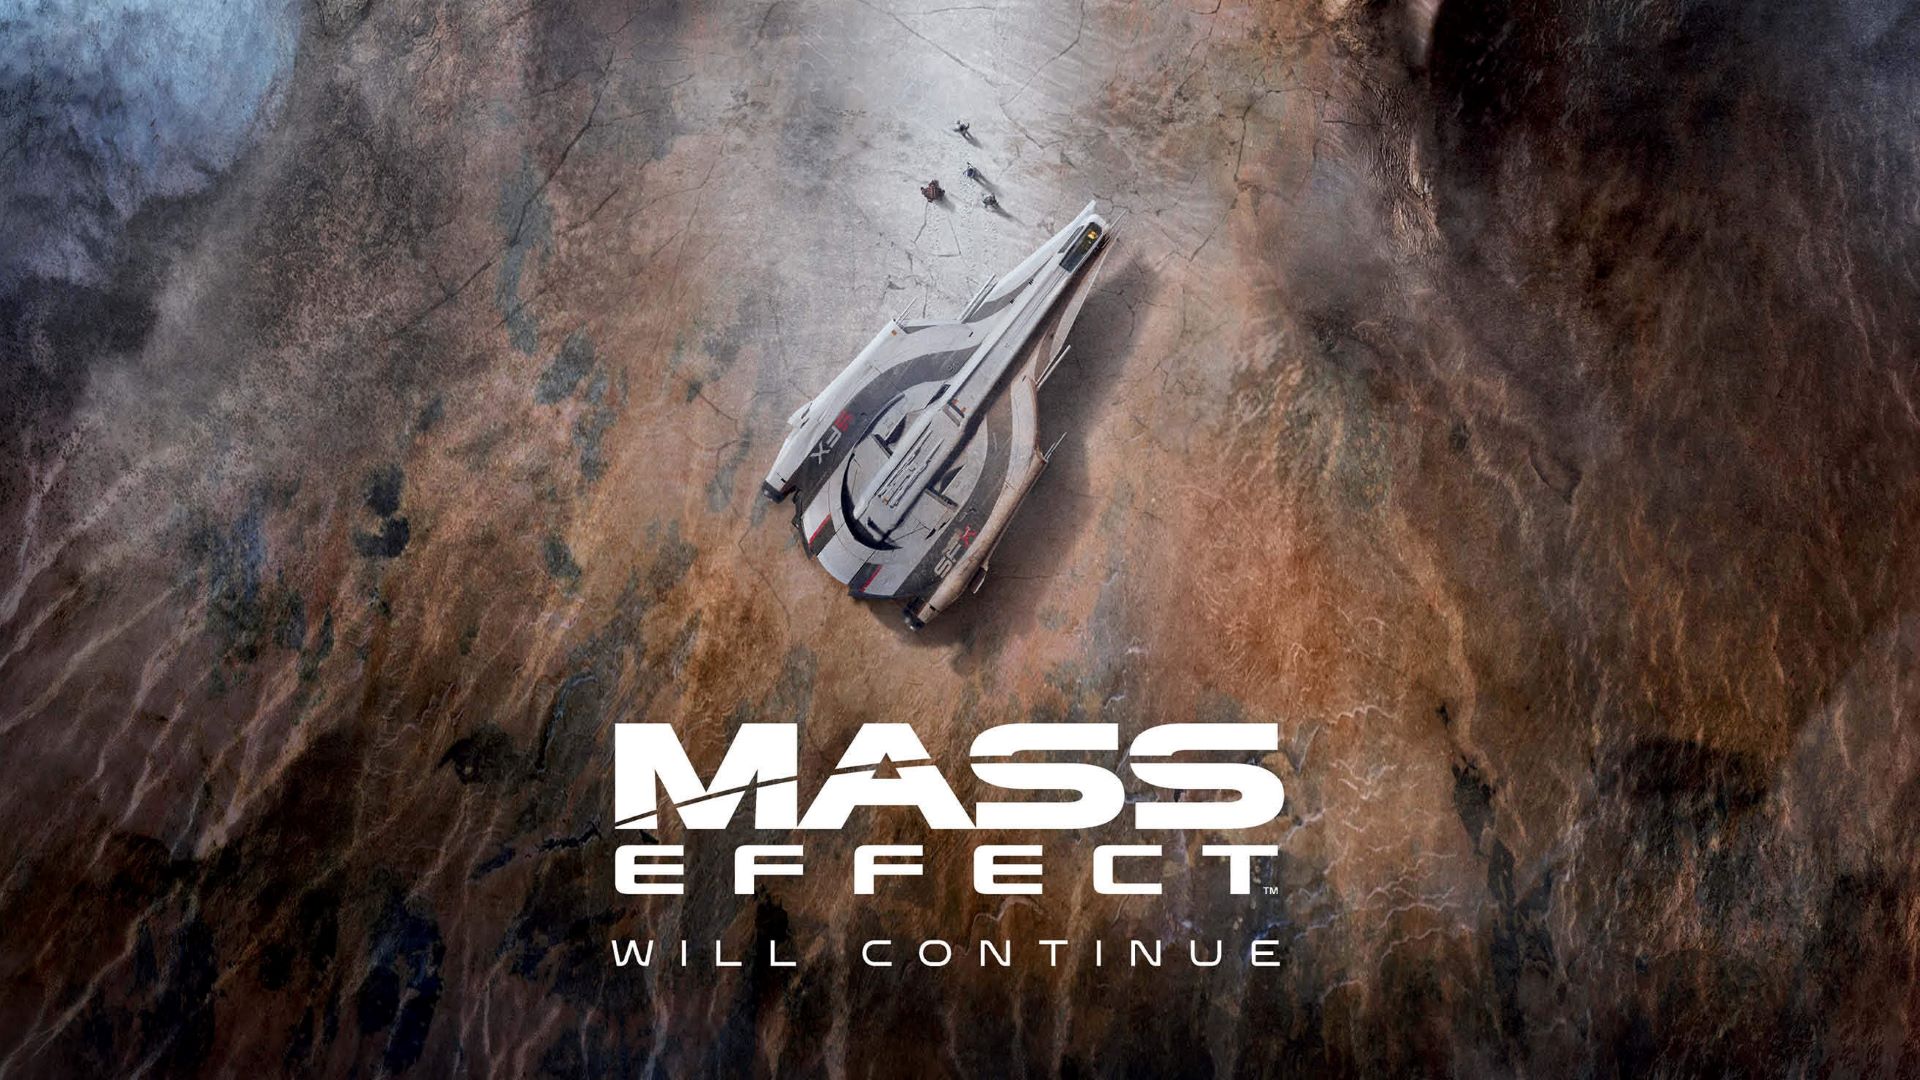 Здається, Bioware "злила" спойлер до нової Mass Effect